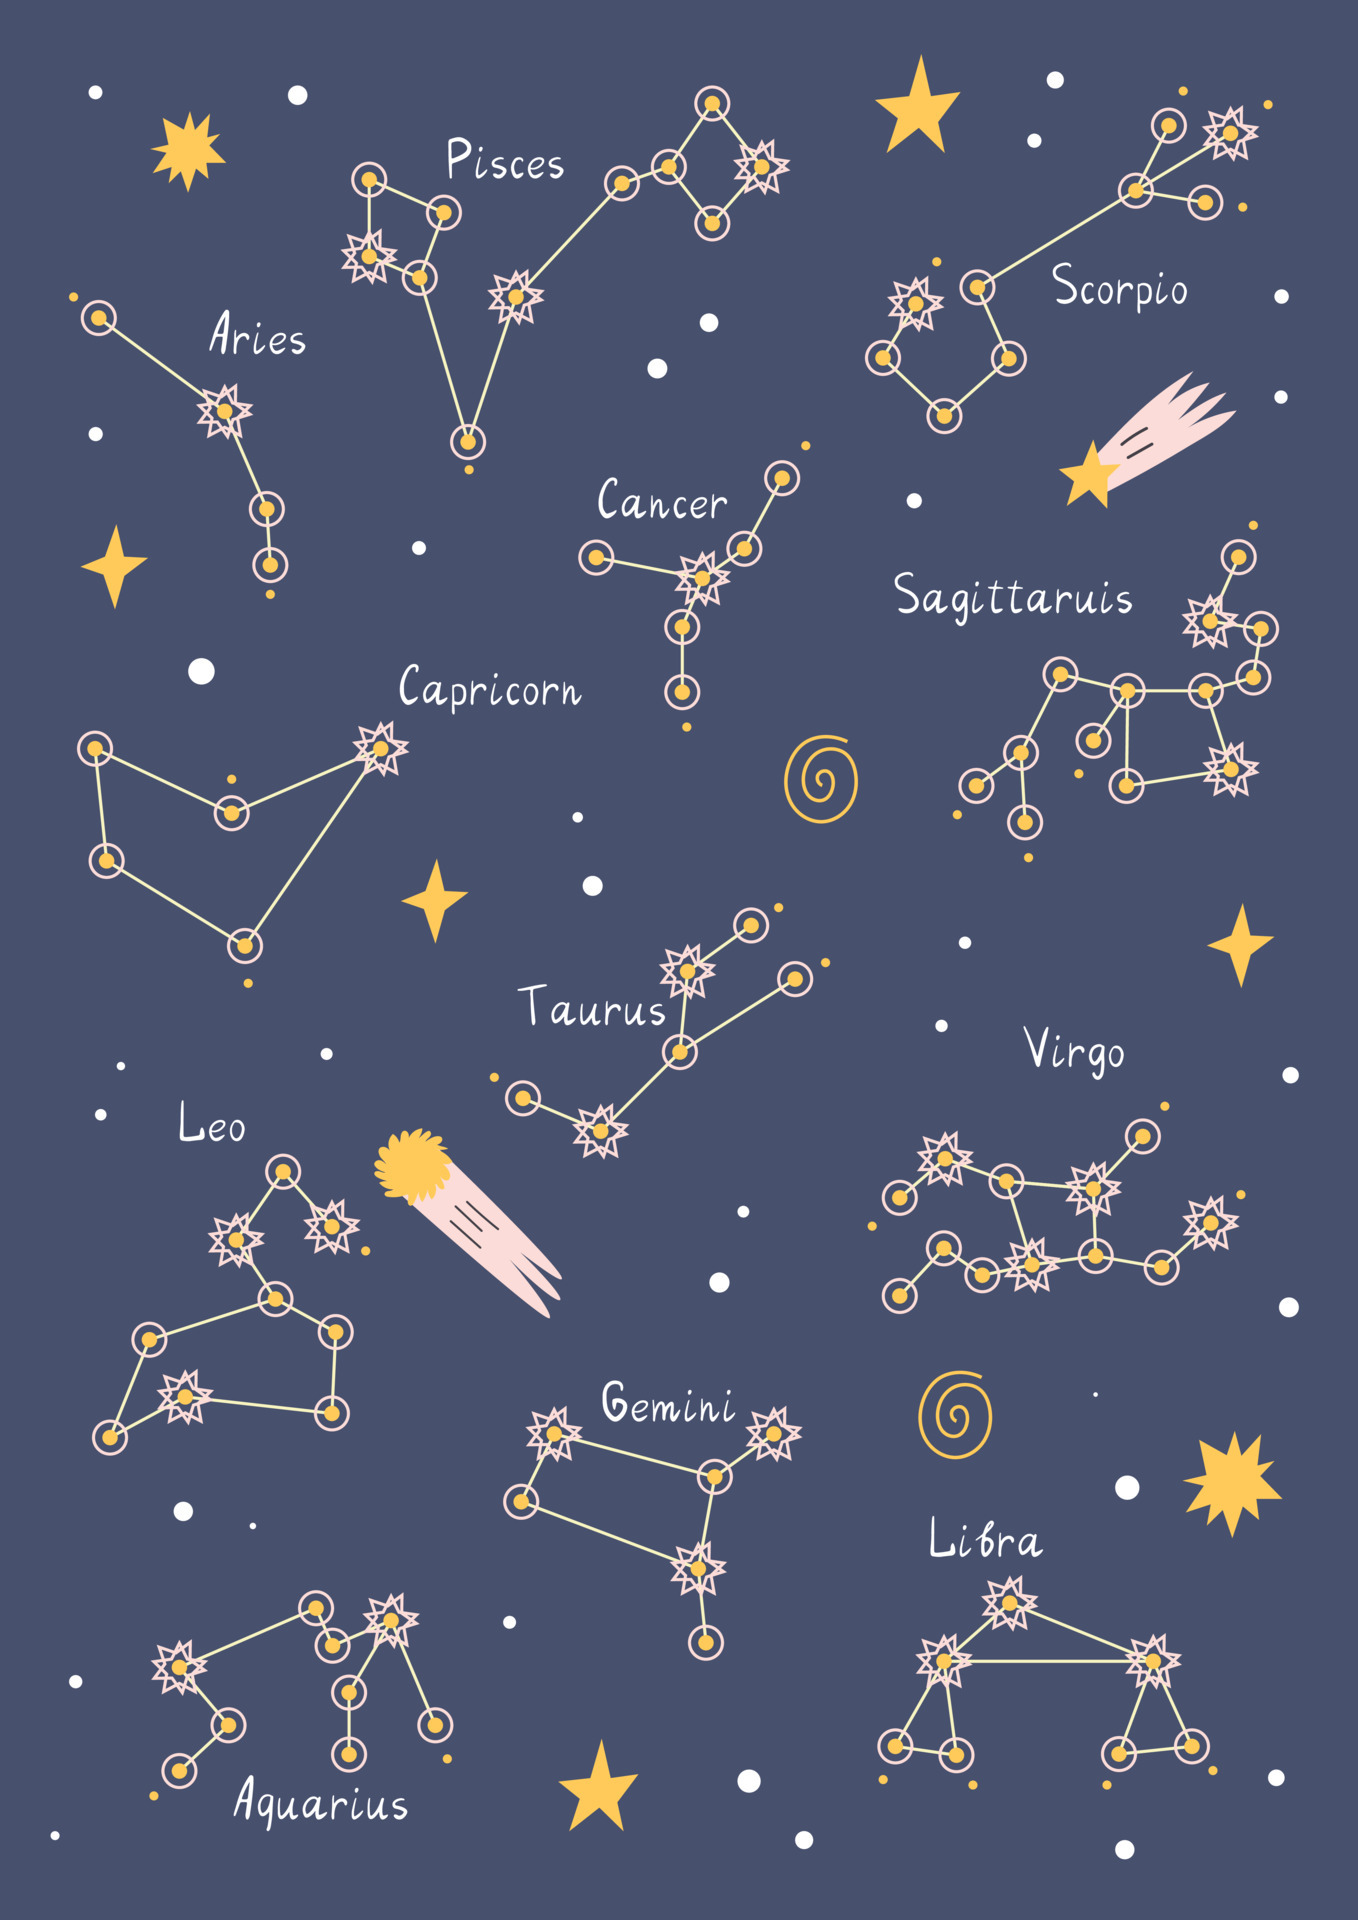 Constellations - Đêm tối không chỉ toả sáng bởi ánh đèn mà còn toả sáng bởi những chòm sao trên trời. Chúng tôi đã lưu lại những khoảnh khắc đẹp nhất của vũ trụ để chia sẻ với mọi người. Hãy cùng khám phá những hình ảnh tuyệt đẹp về các chòm sao!